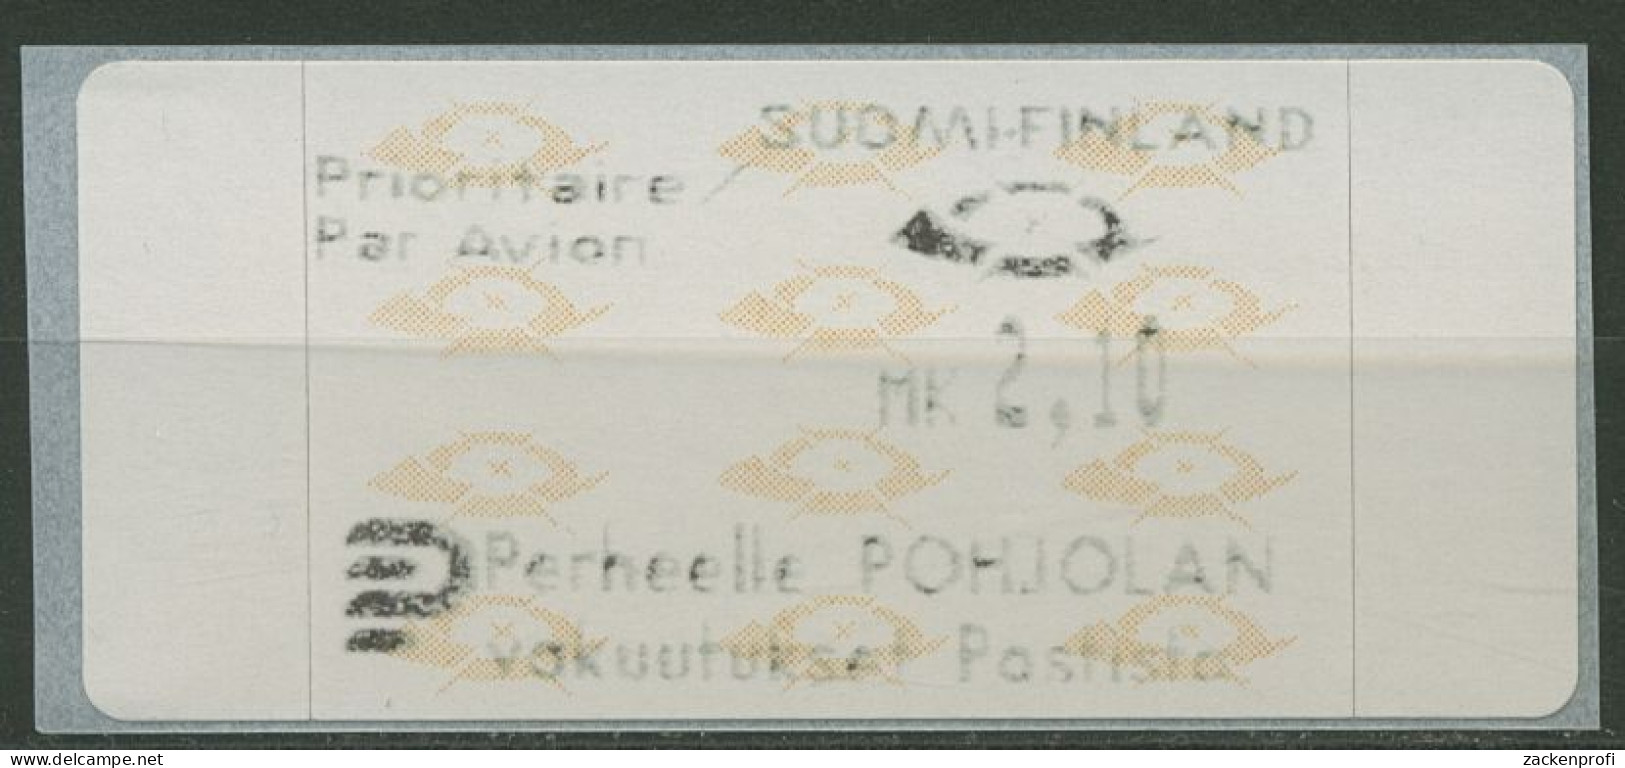 Finnland Automatenmarken 1992 Posthörner Einzelwert ATM 12.3 Z6 Postfrisch - Automaatzegels [ATM]